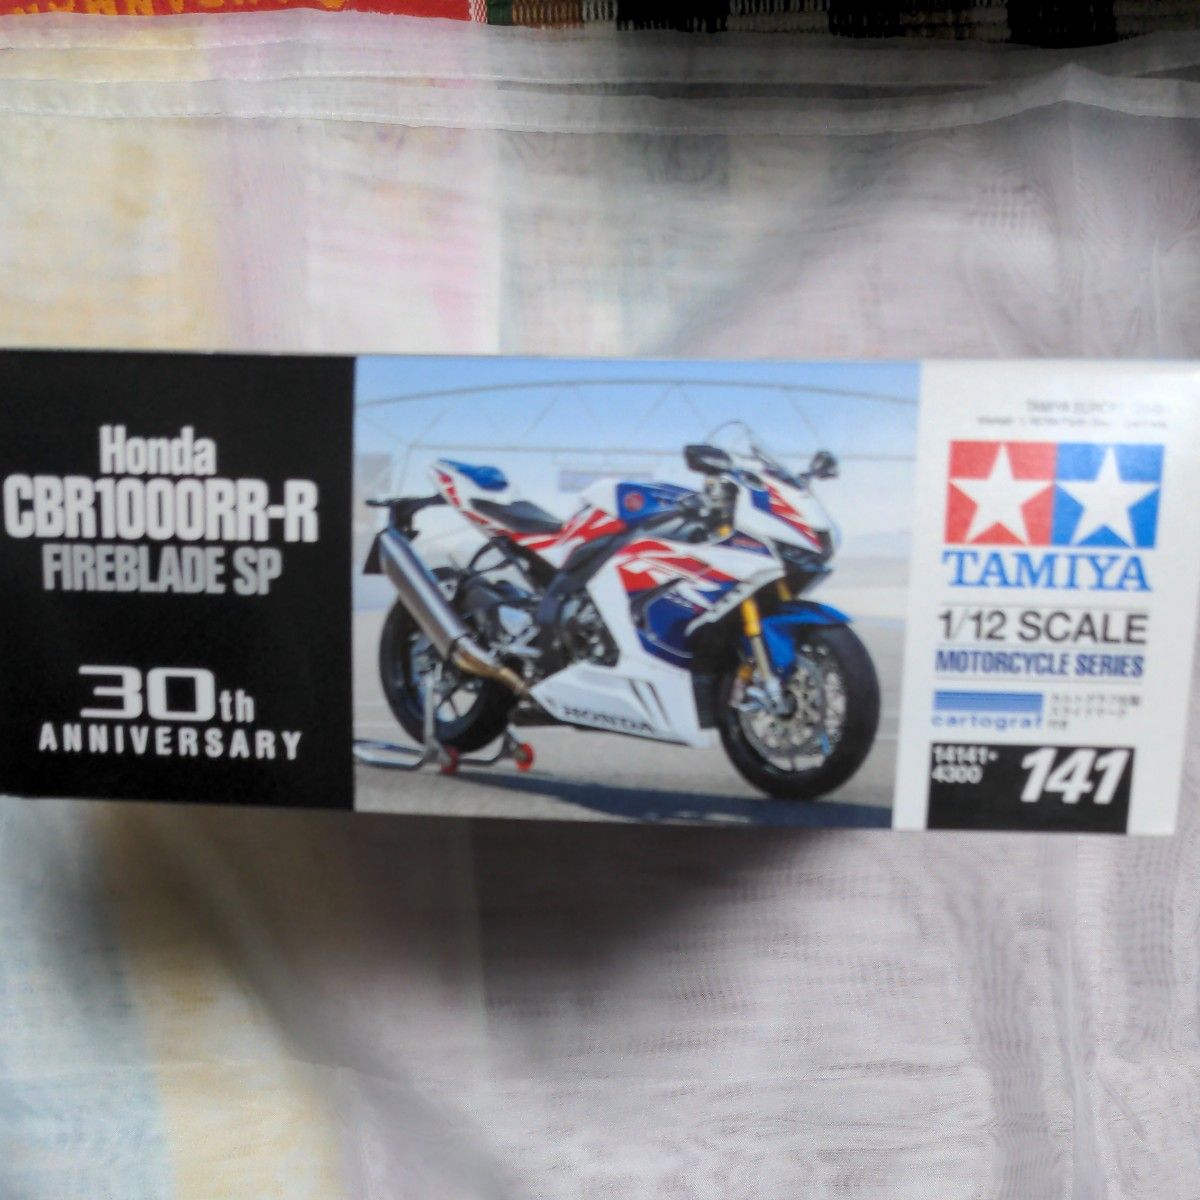 タミヤ  Honda CBR1000RR-R FIREBLADE SP 30th Anniversary(新品・未開封品)